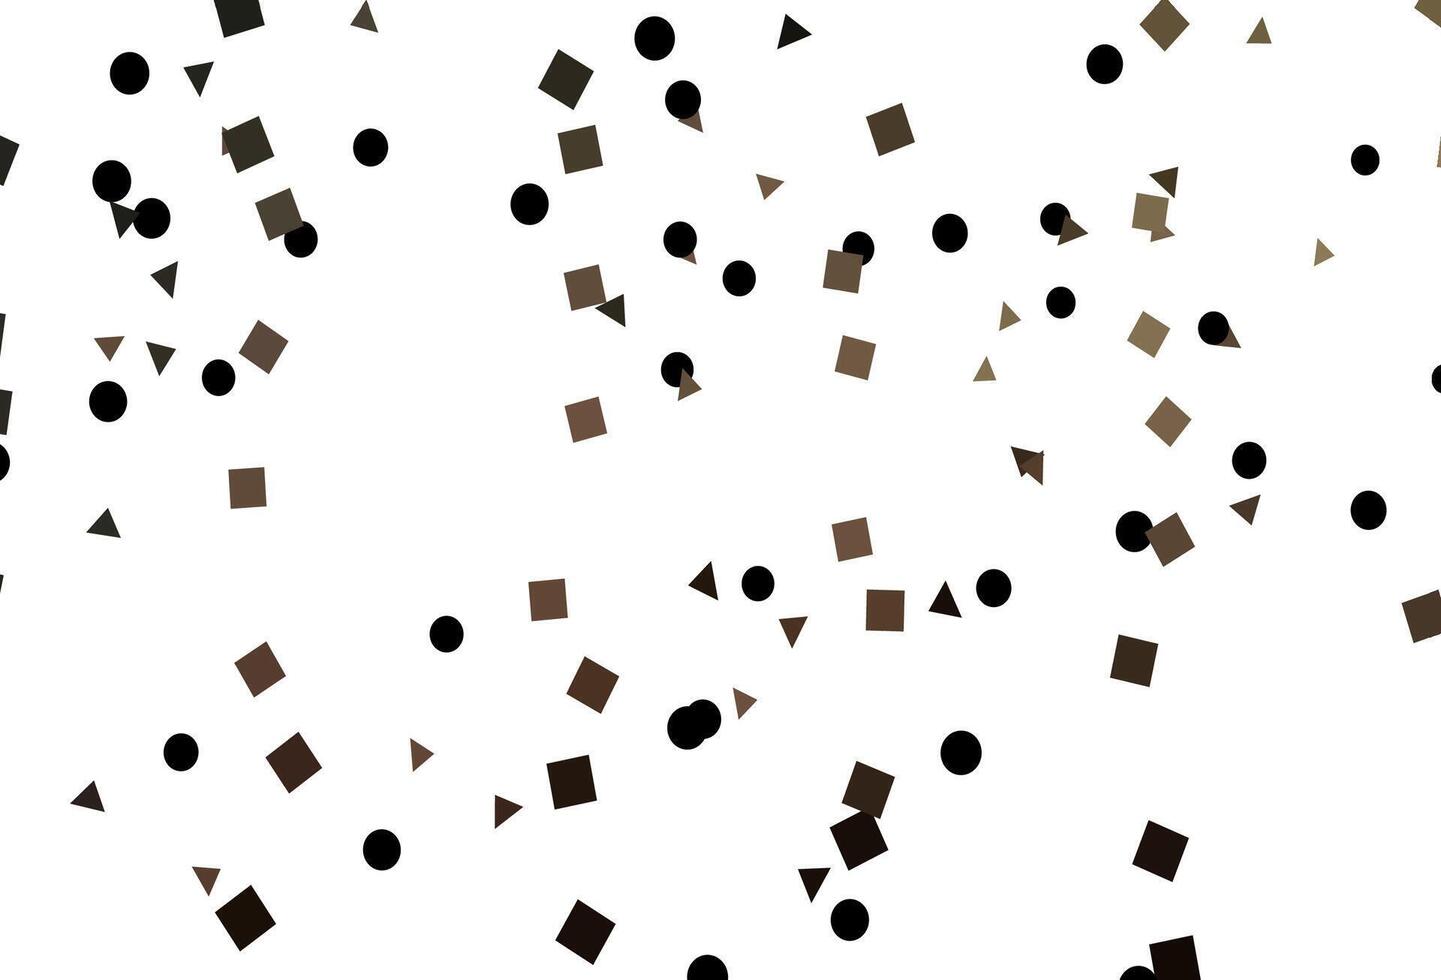 padrão de vetor preto claro em estilo poligonal com círculos.